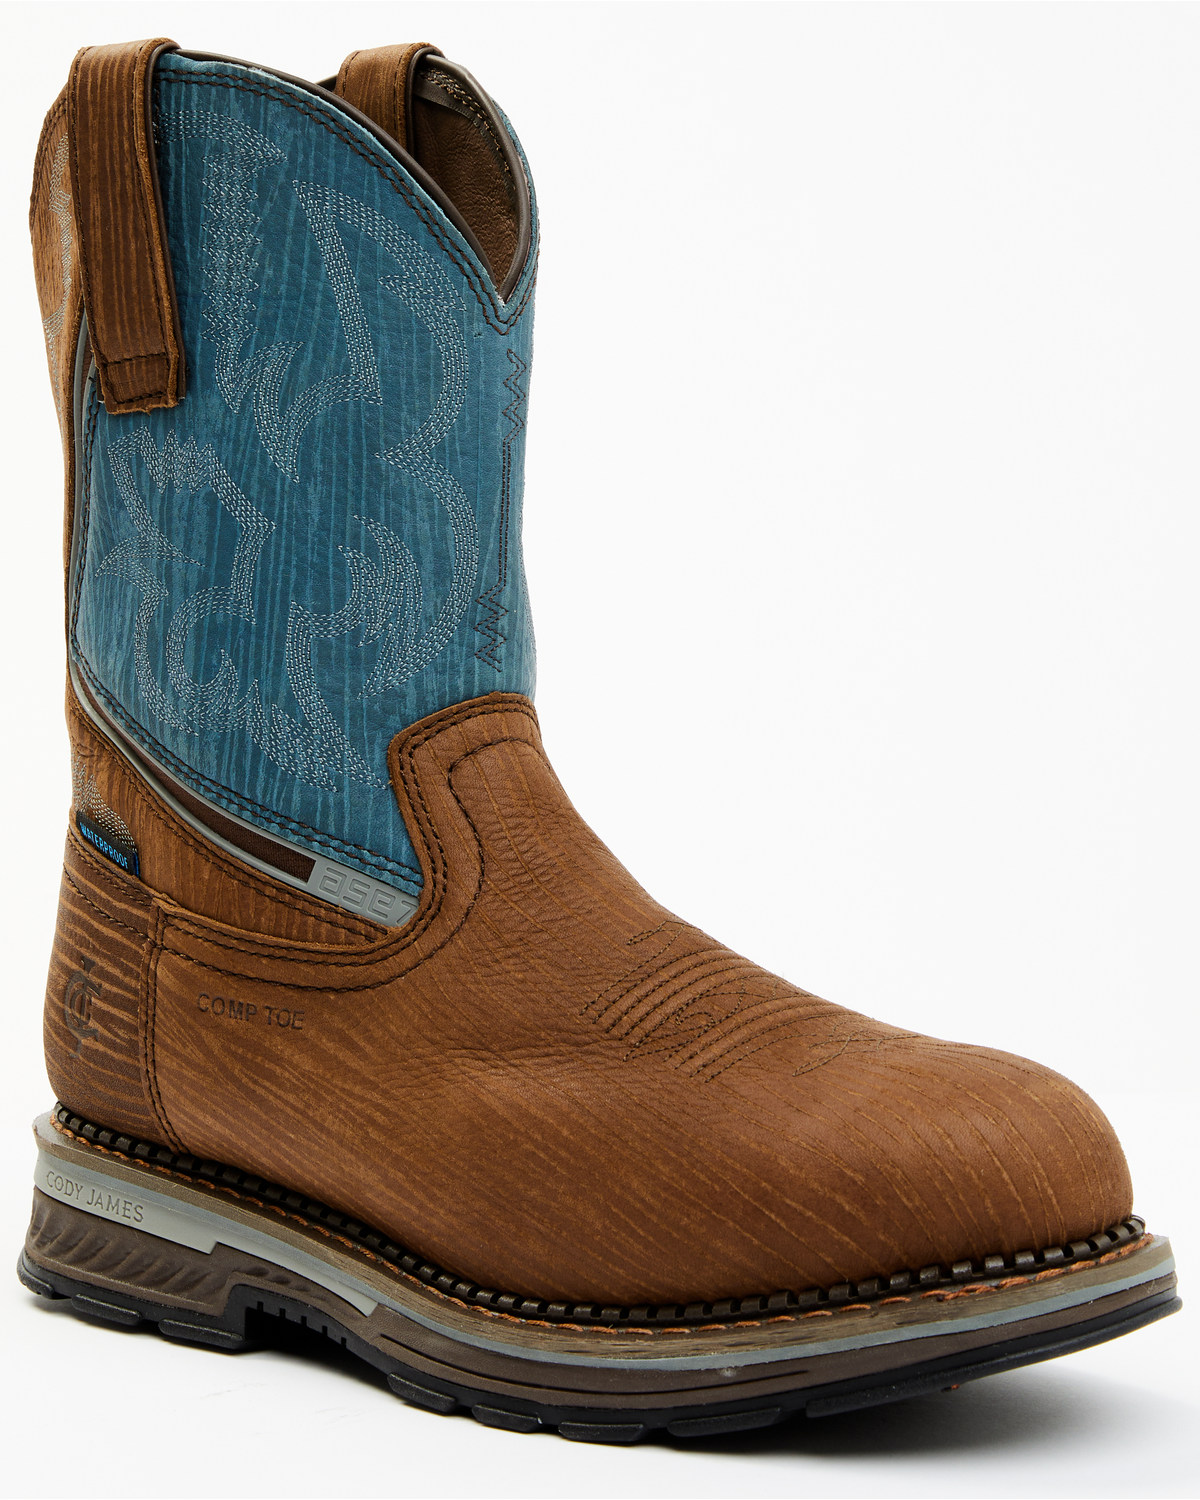 Cody James Men's Disruptor Waterproof Work Boots - Composite Toe